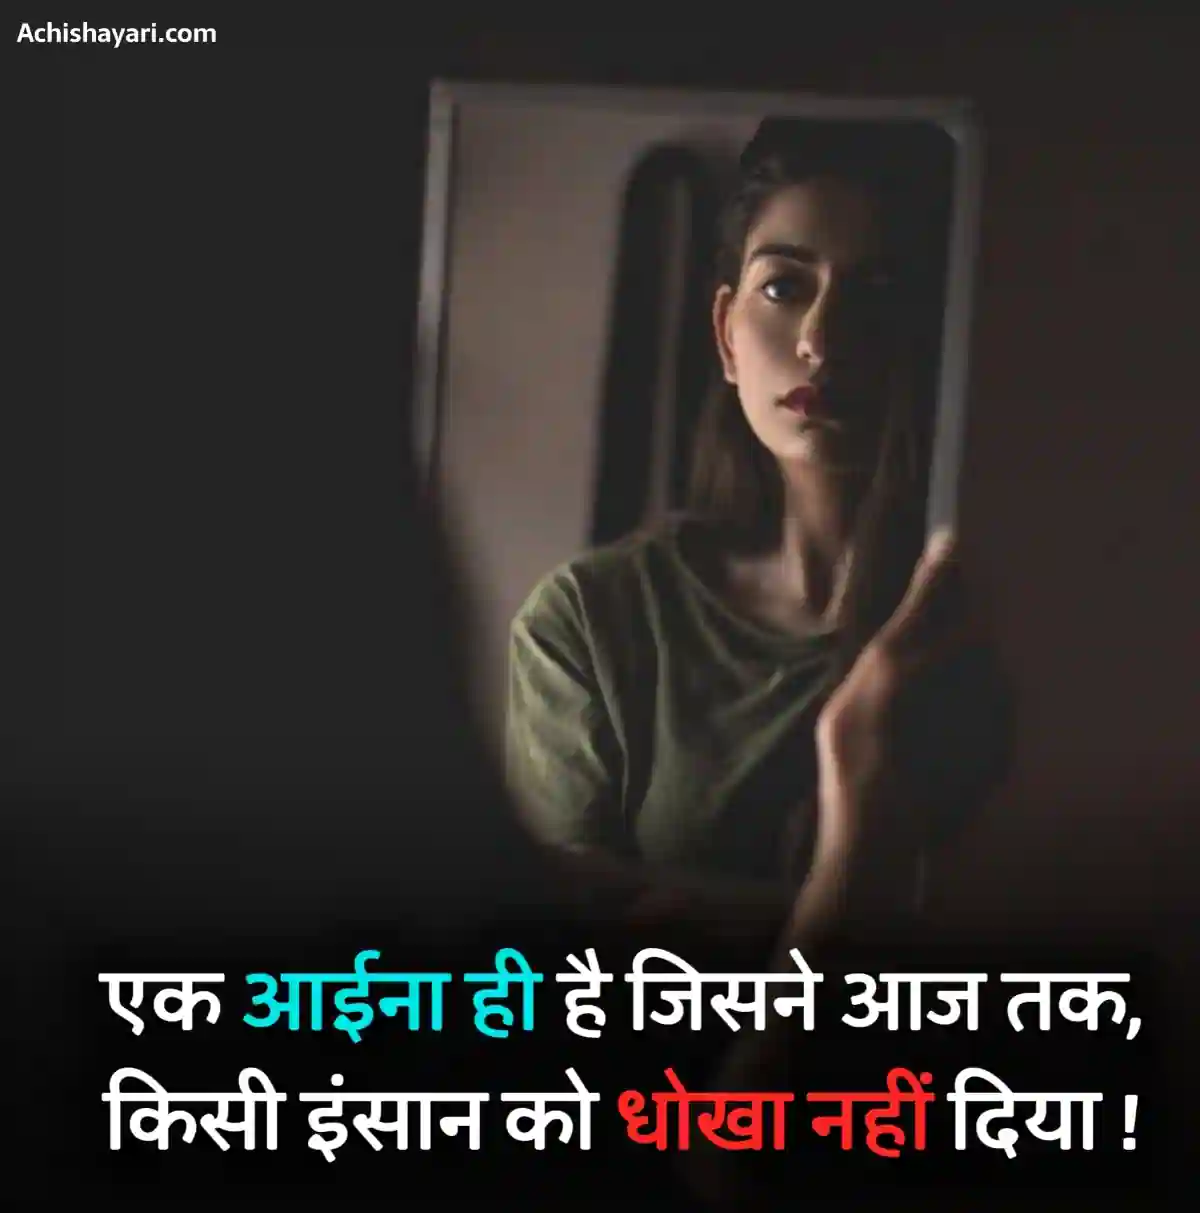 Dhoka Shayari in Hindi Image